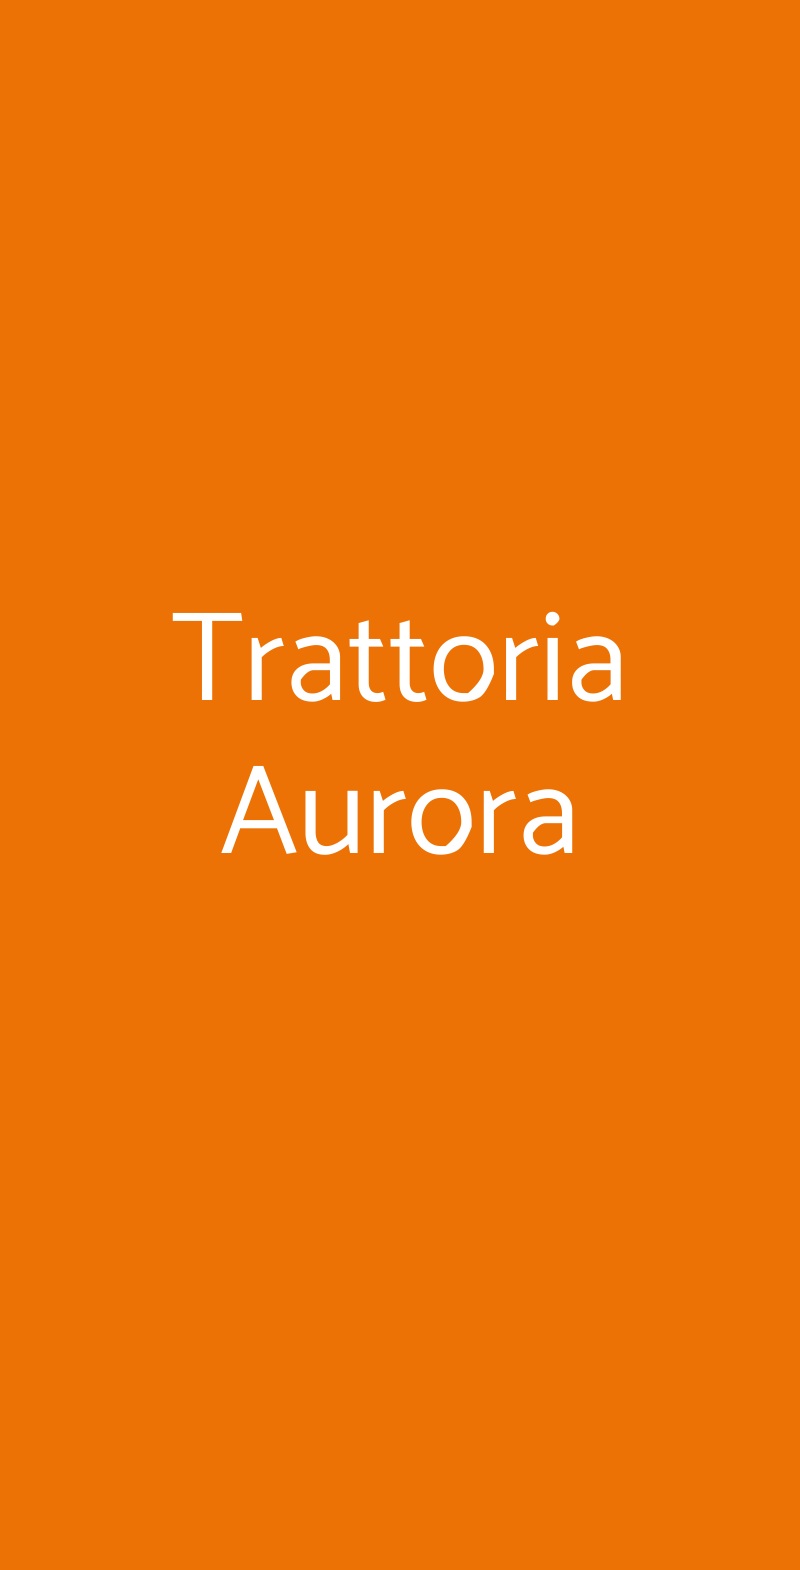 Trattoria Aurora Milano menù 1 pagina